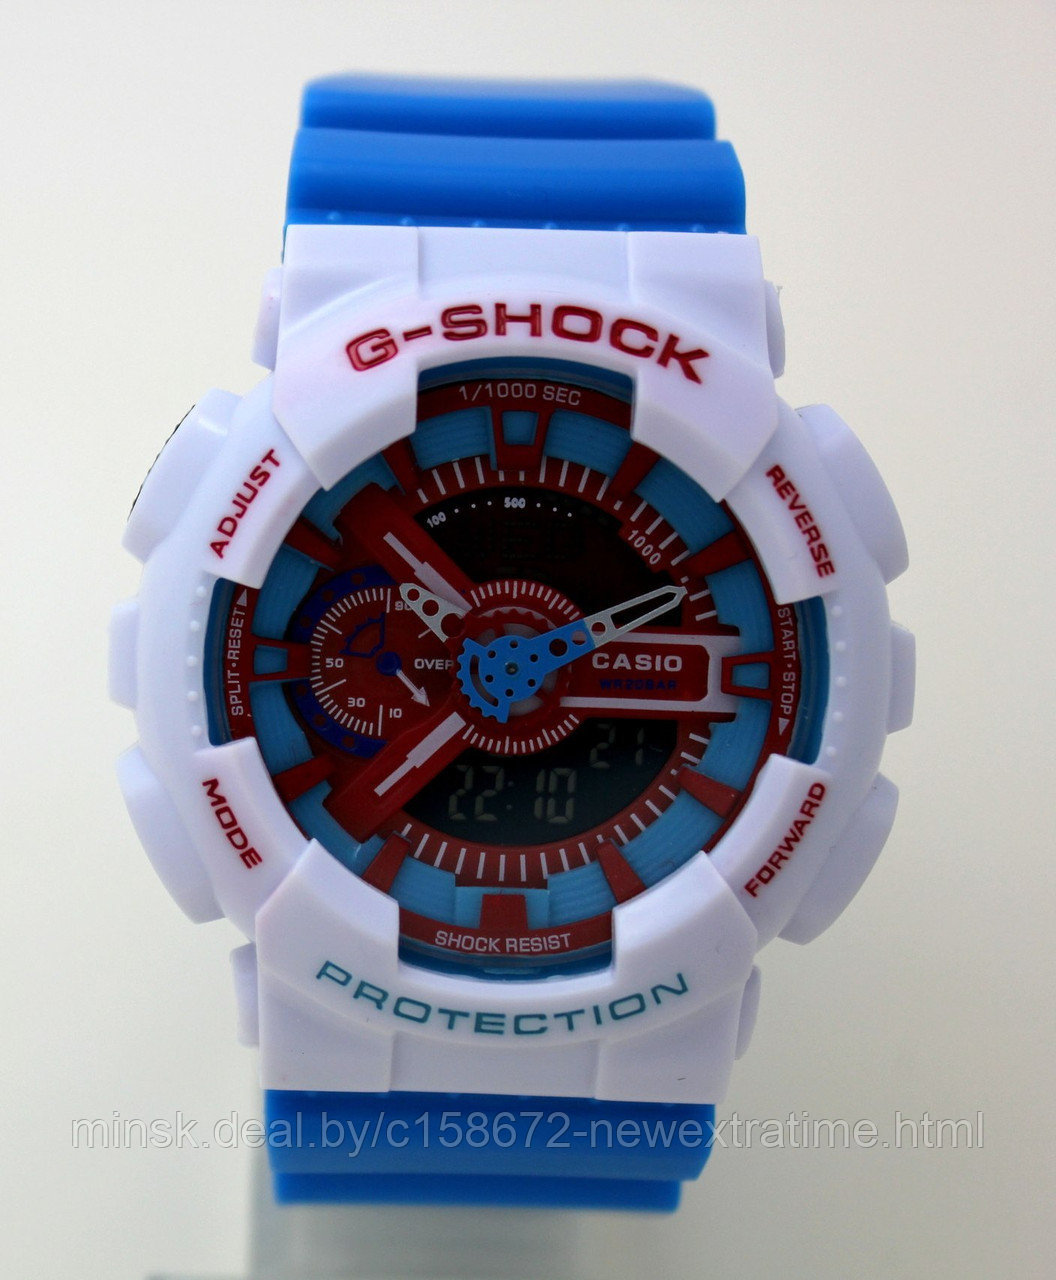 Спортивные часы G-Shock от Casio (копия)  Бело сине красные., фото 1